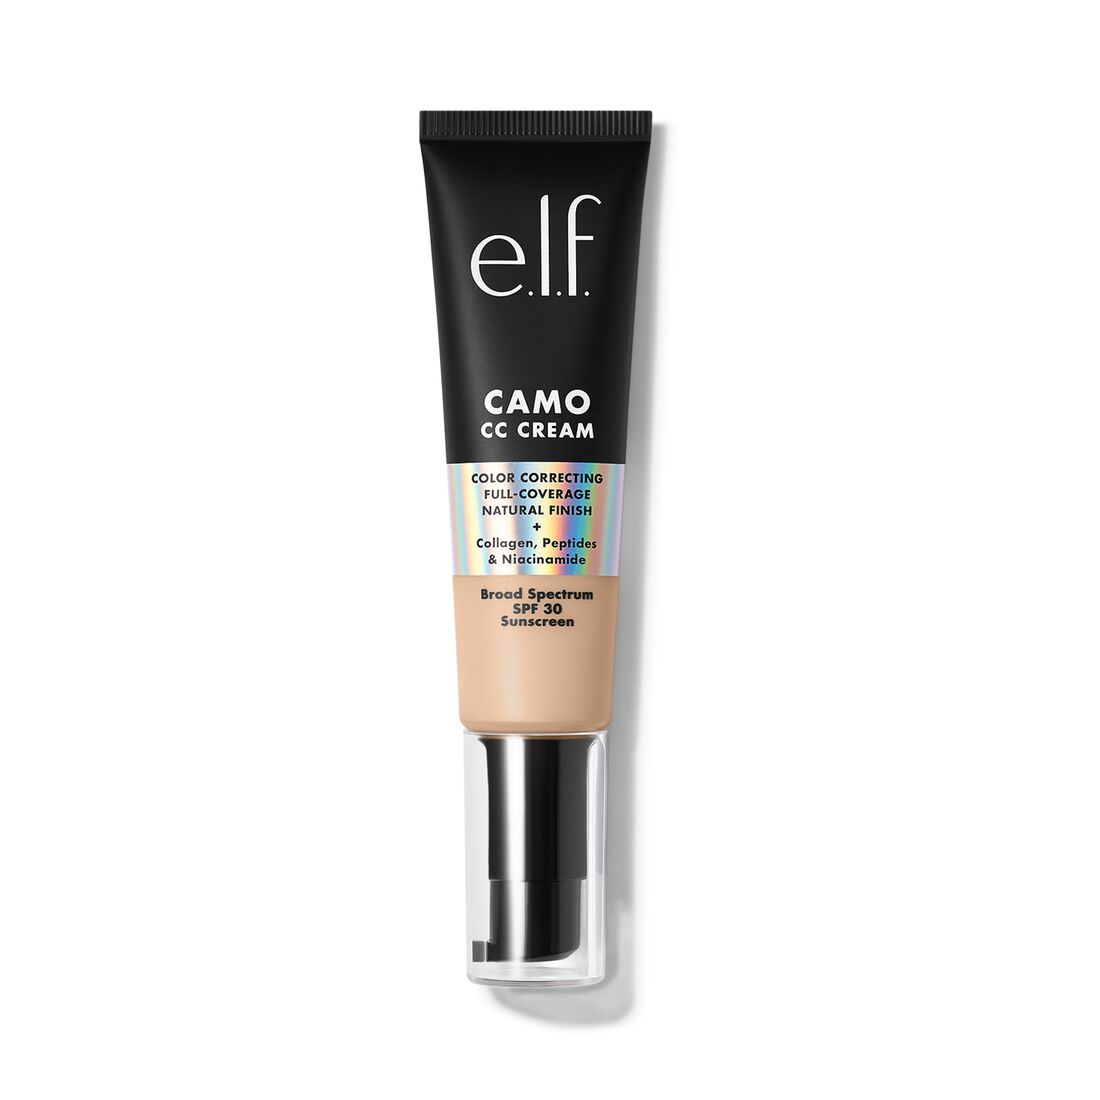 Camo CC Cream | e.l.f. cosmetics (US)